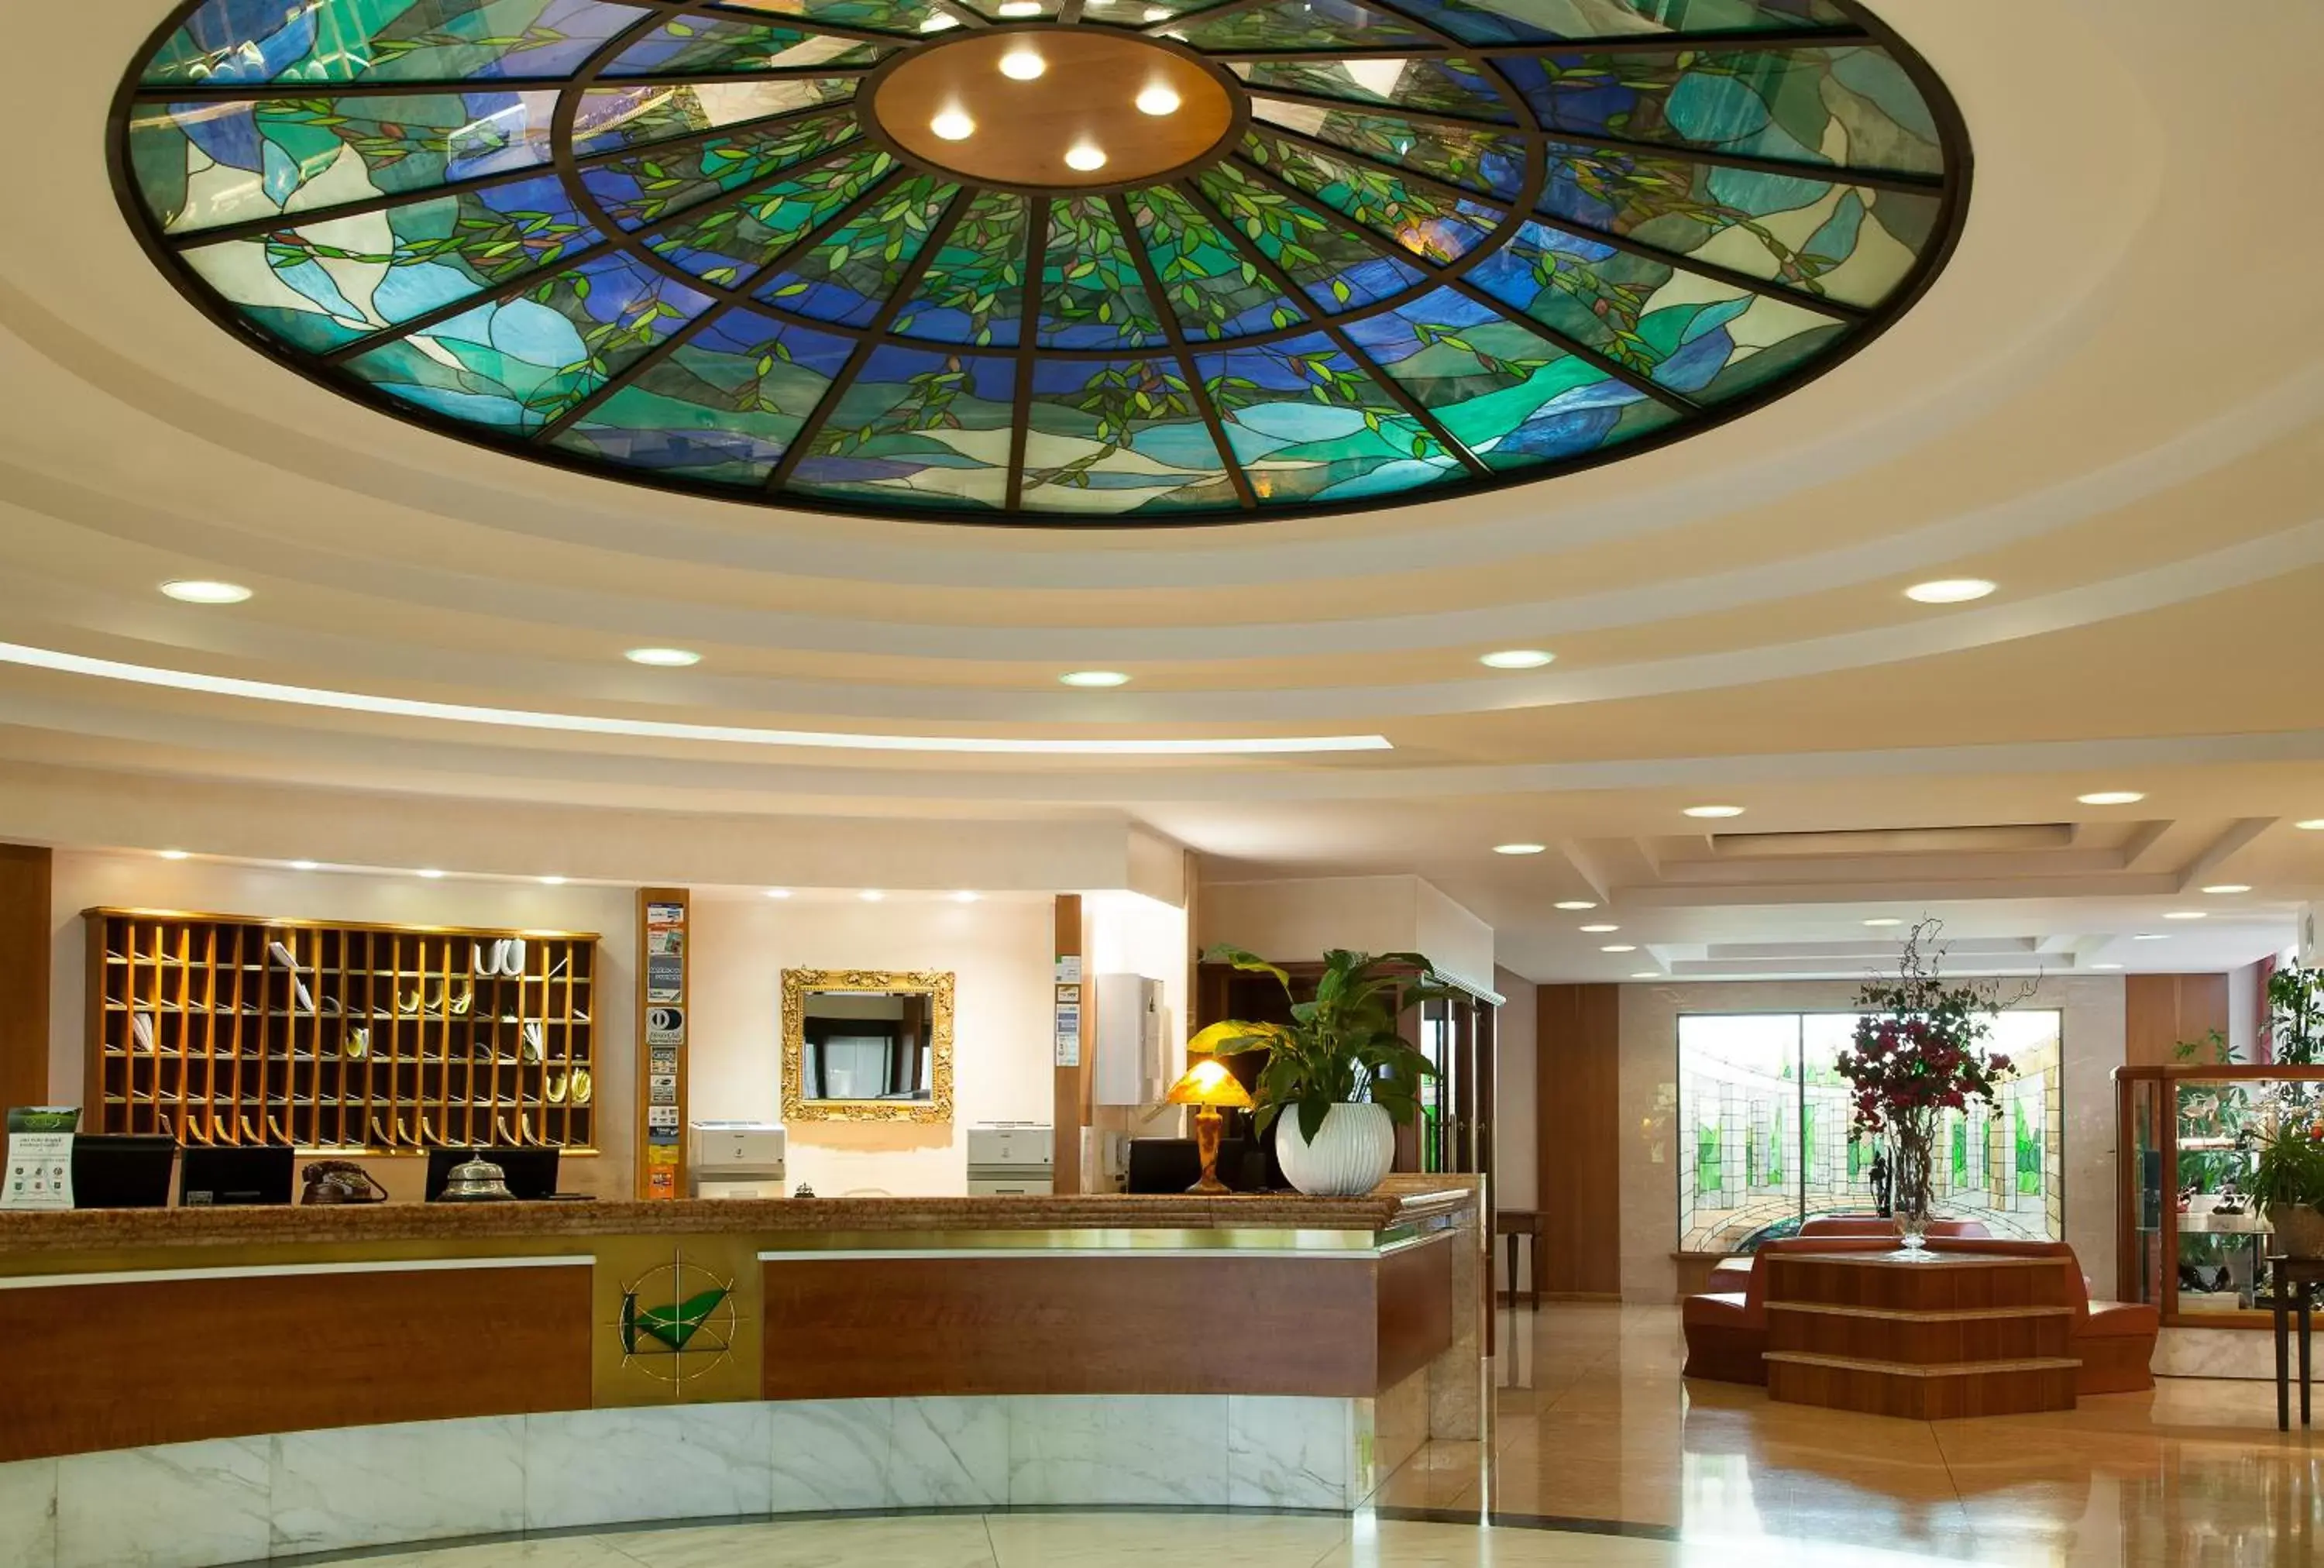 Lobby or reception, Lobby/Reception in Best Western Hotel Leonardo da Vinci